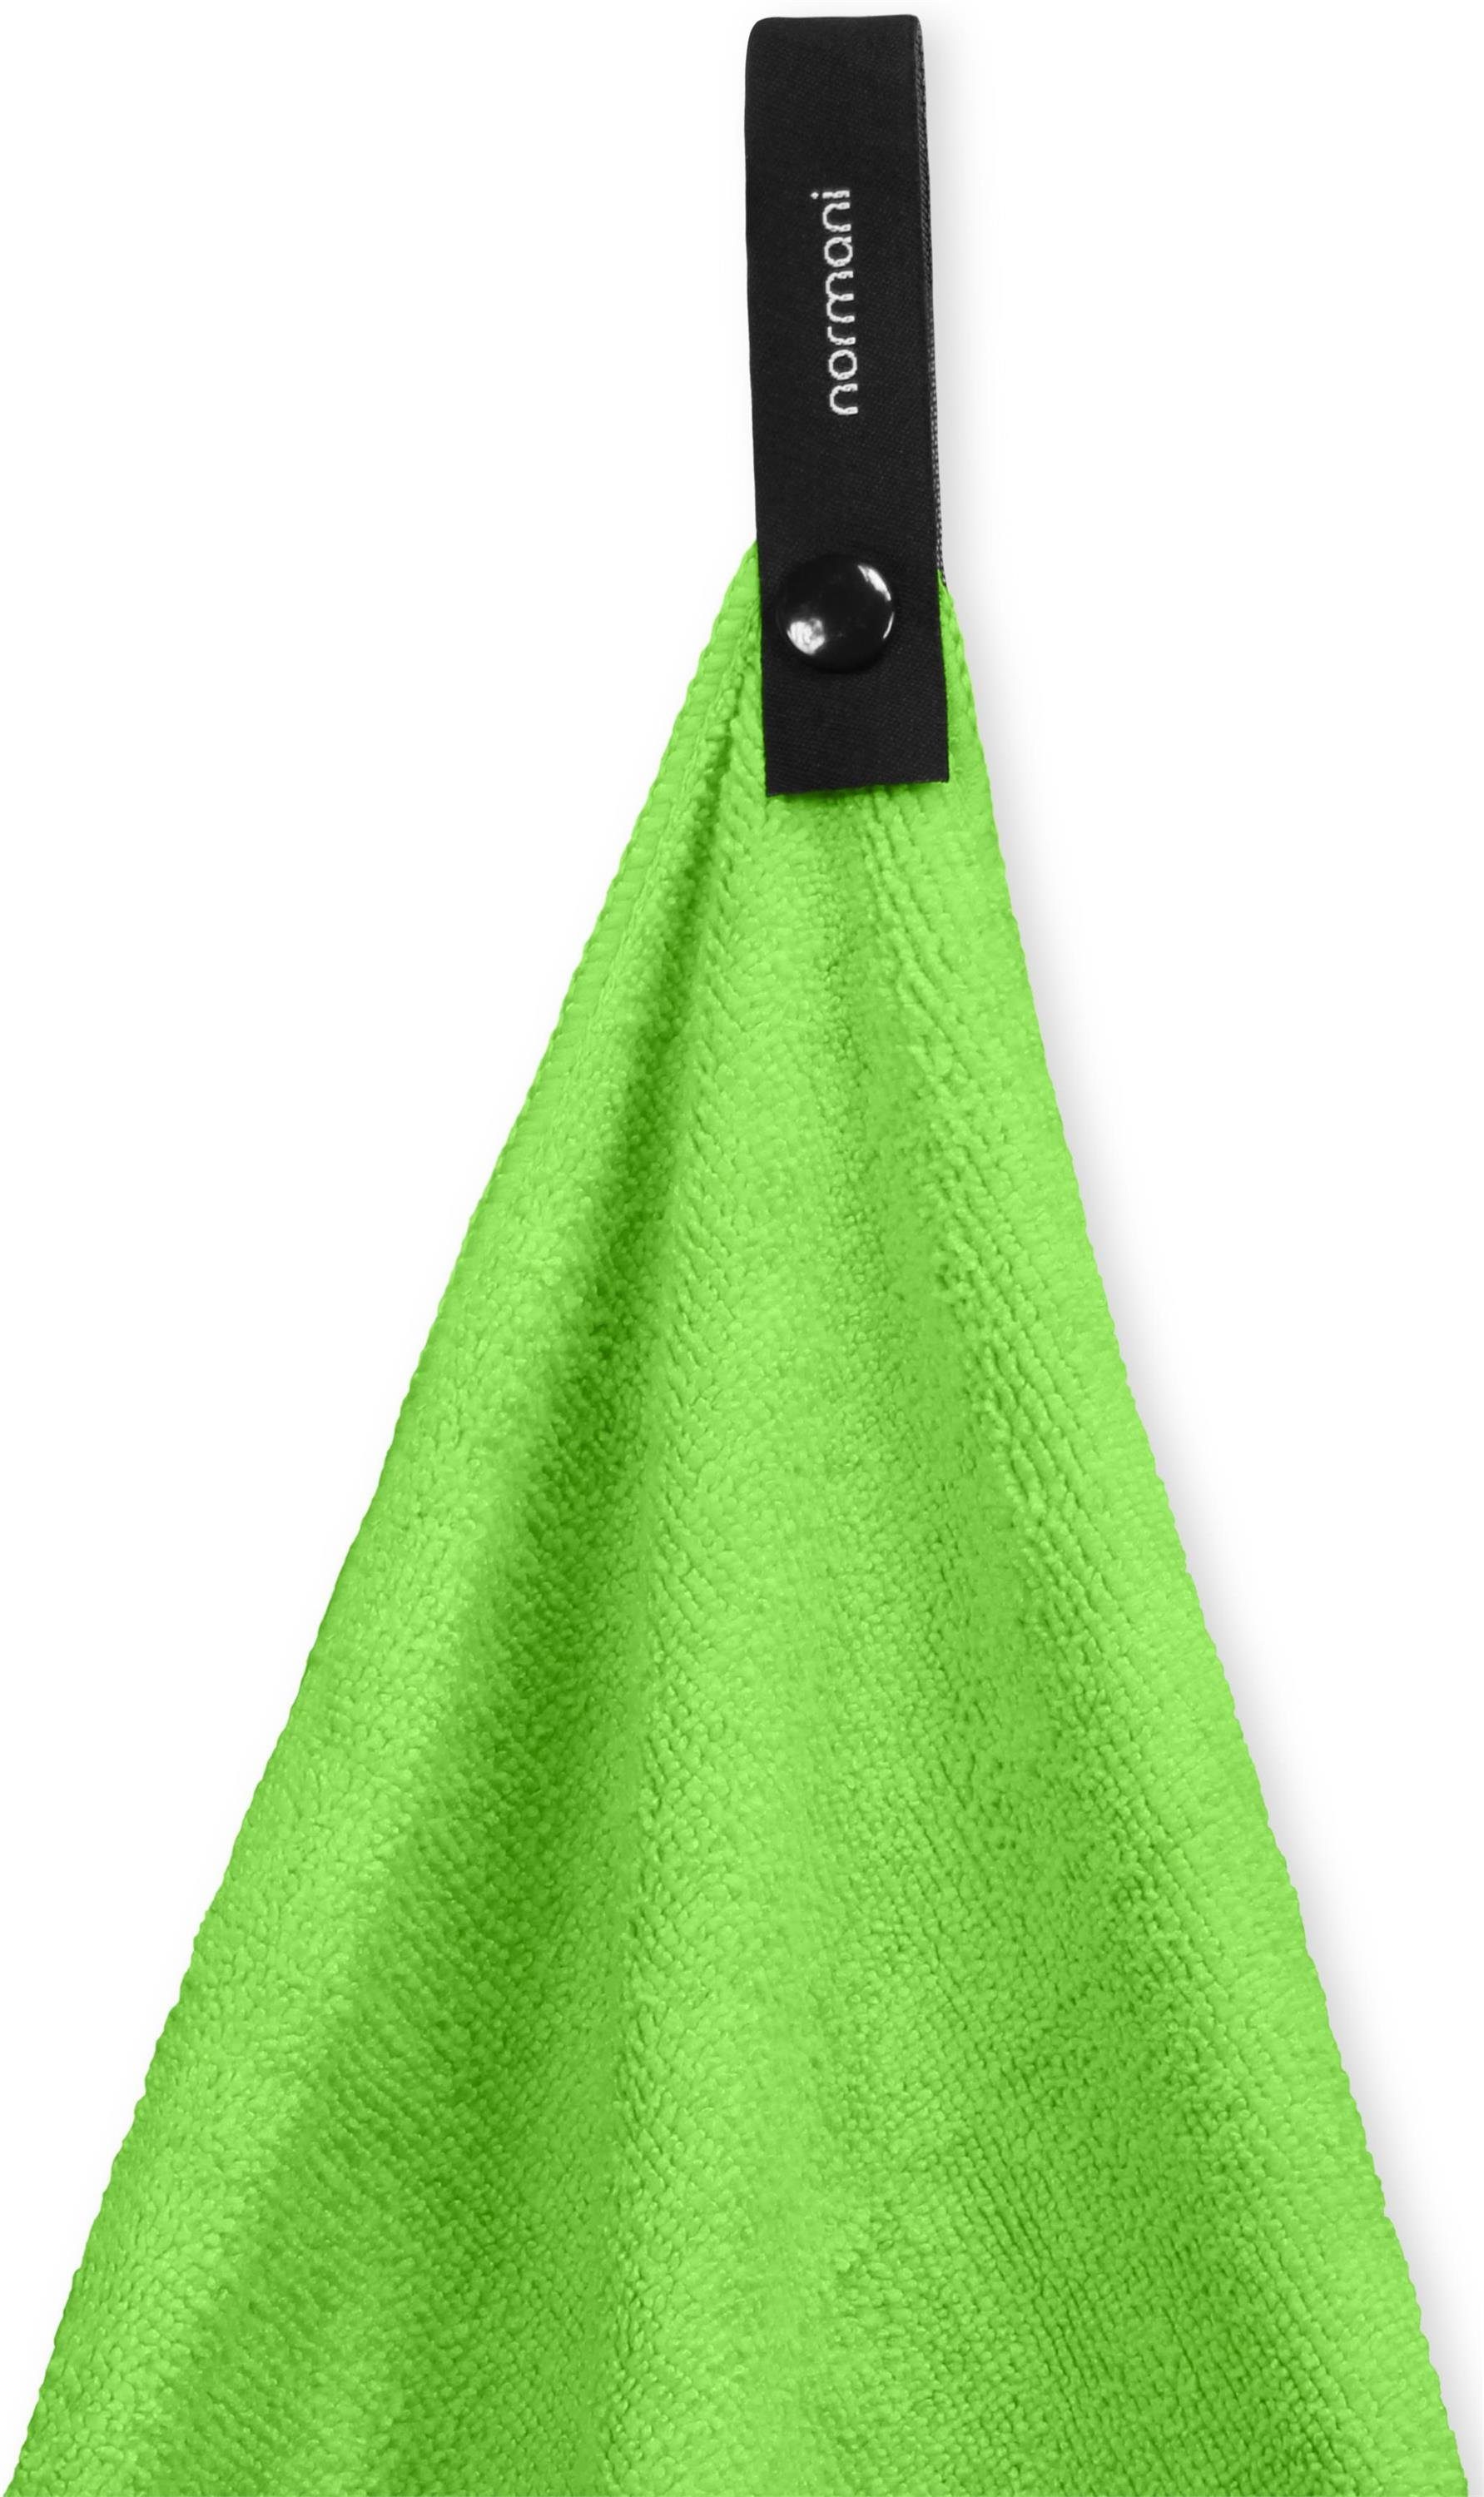 Grün normani 20x20 Reisehandtuch Terry, Mikrofaserhandtuch Polyester